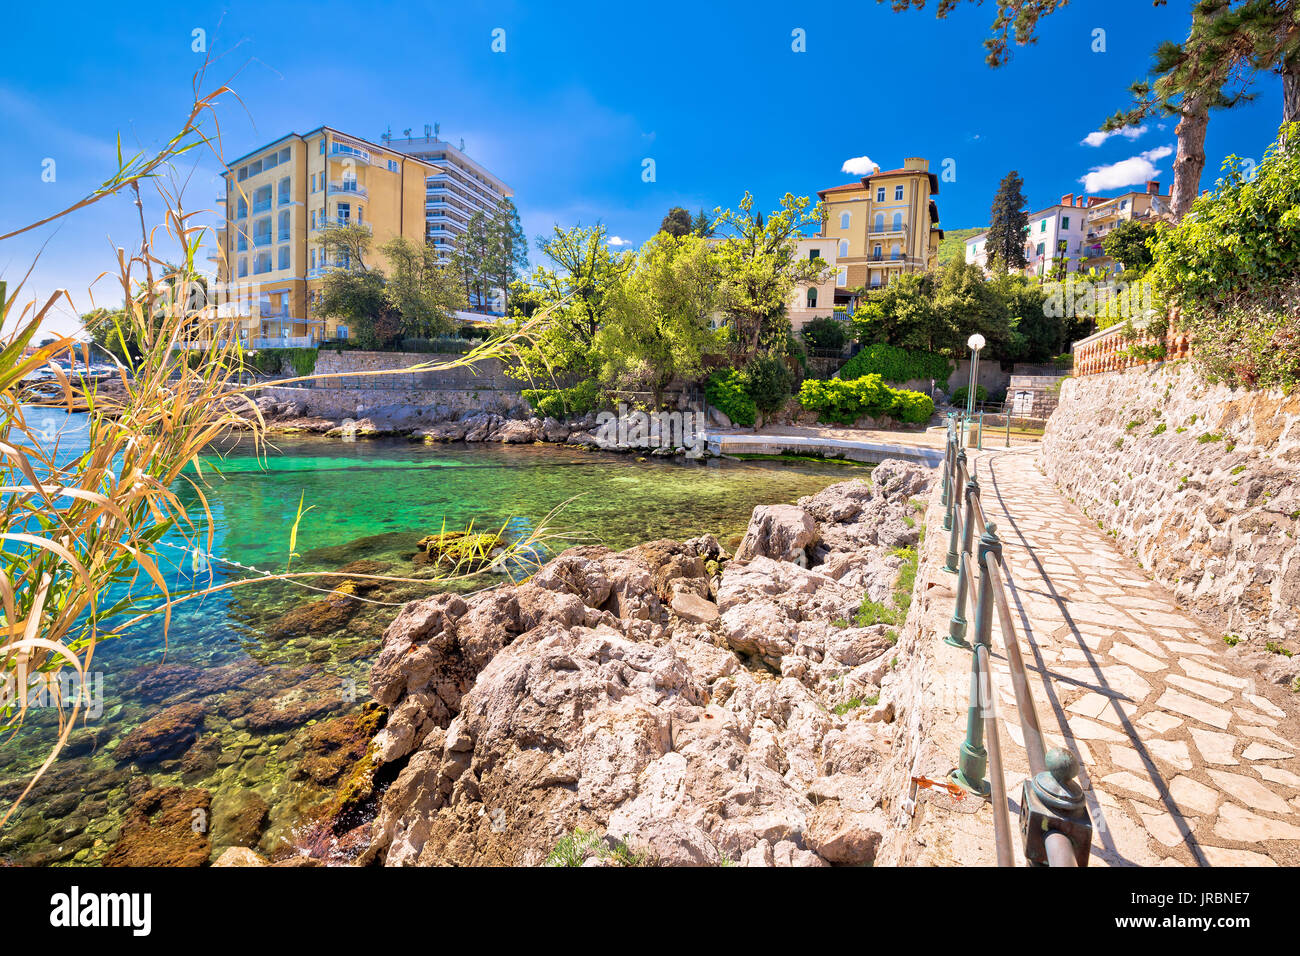 Plage et promenade Lungomare à Opatija, ville située dans la baie de Kvarner, Croatie Banque D'Images